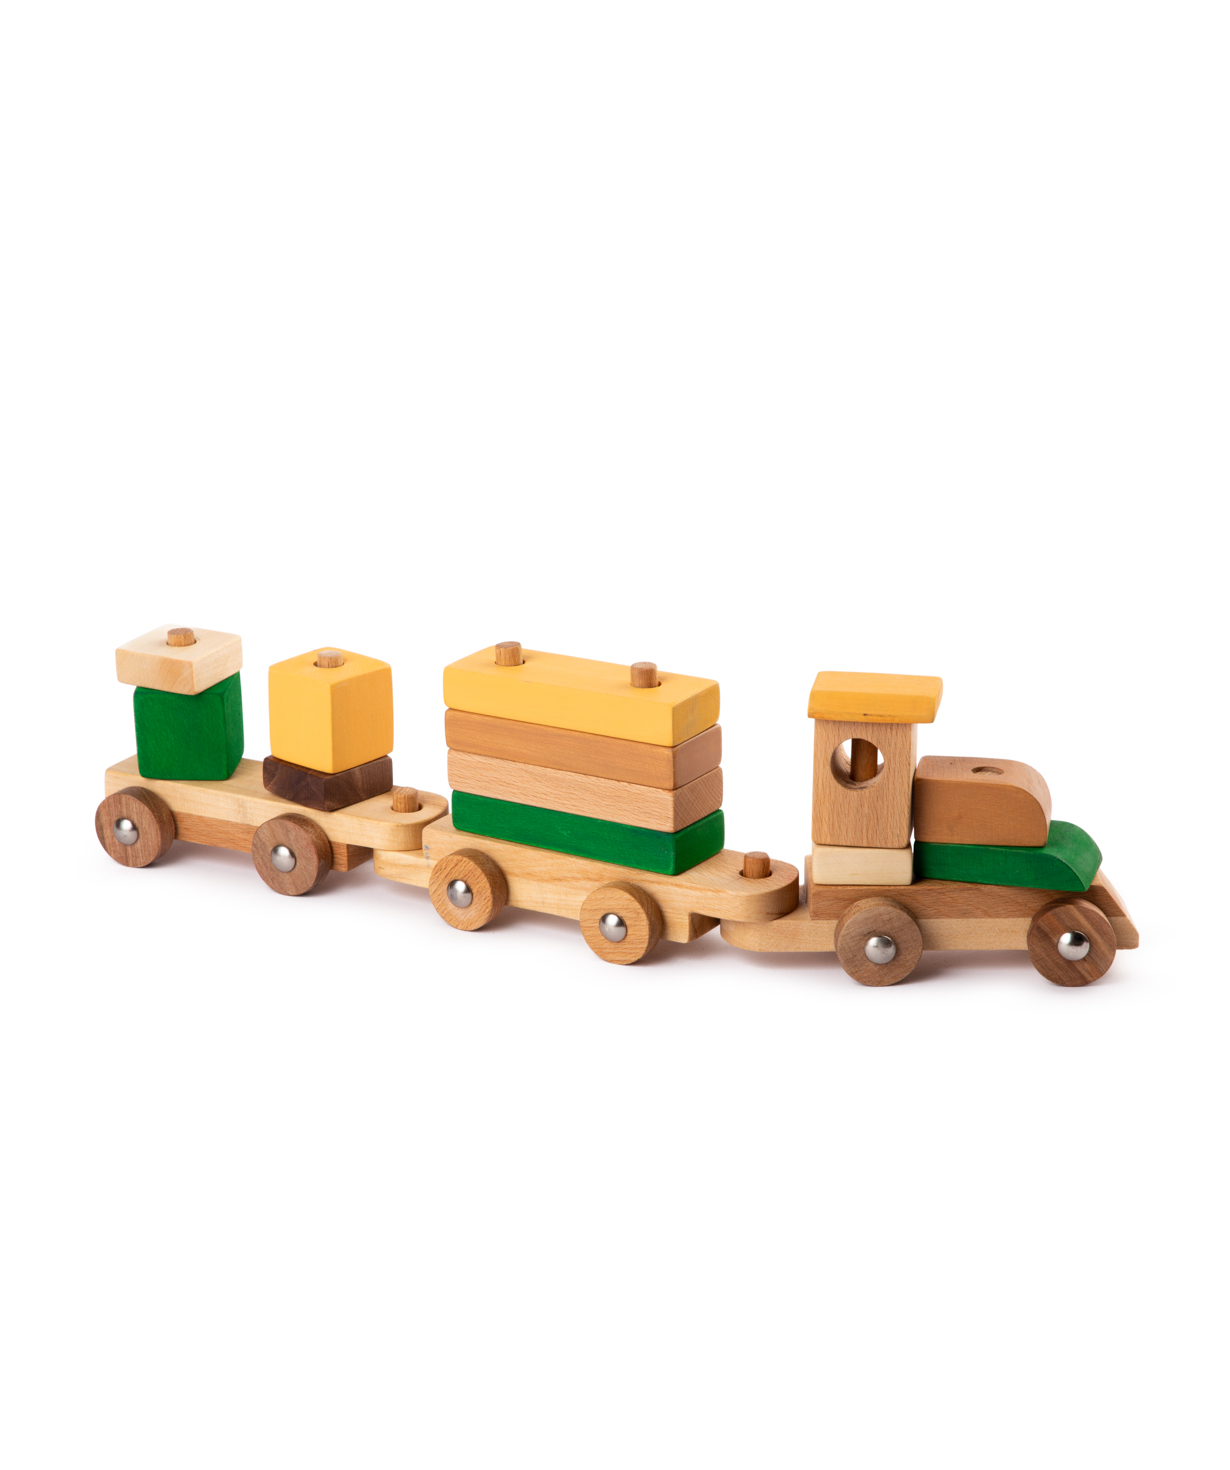 Խաղալիք «Im wooden toys» կոնստրուկտոր - գնացք